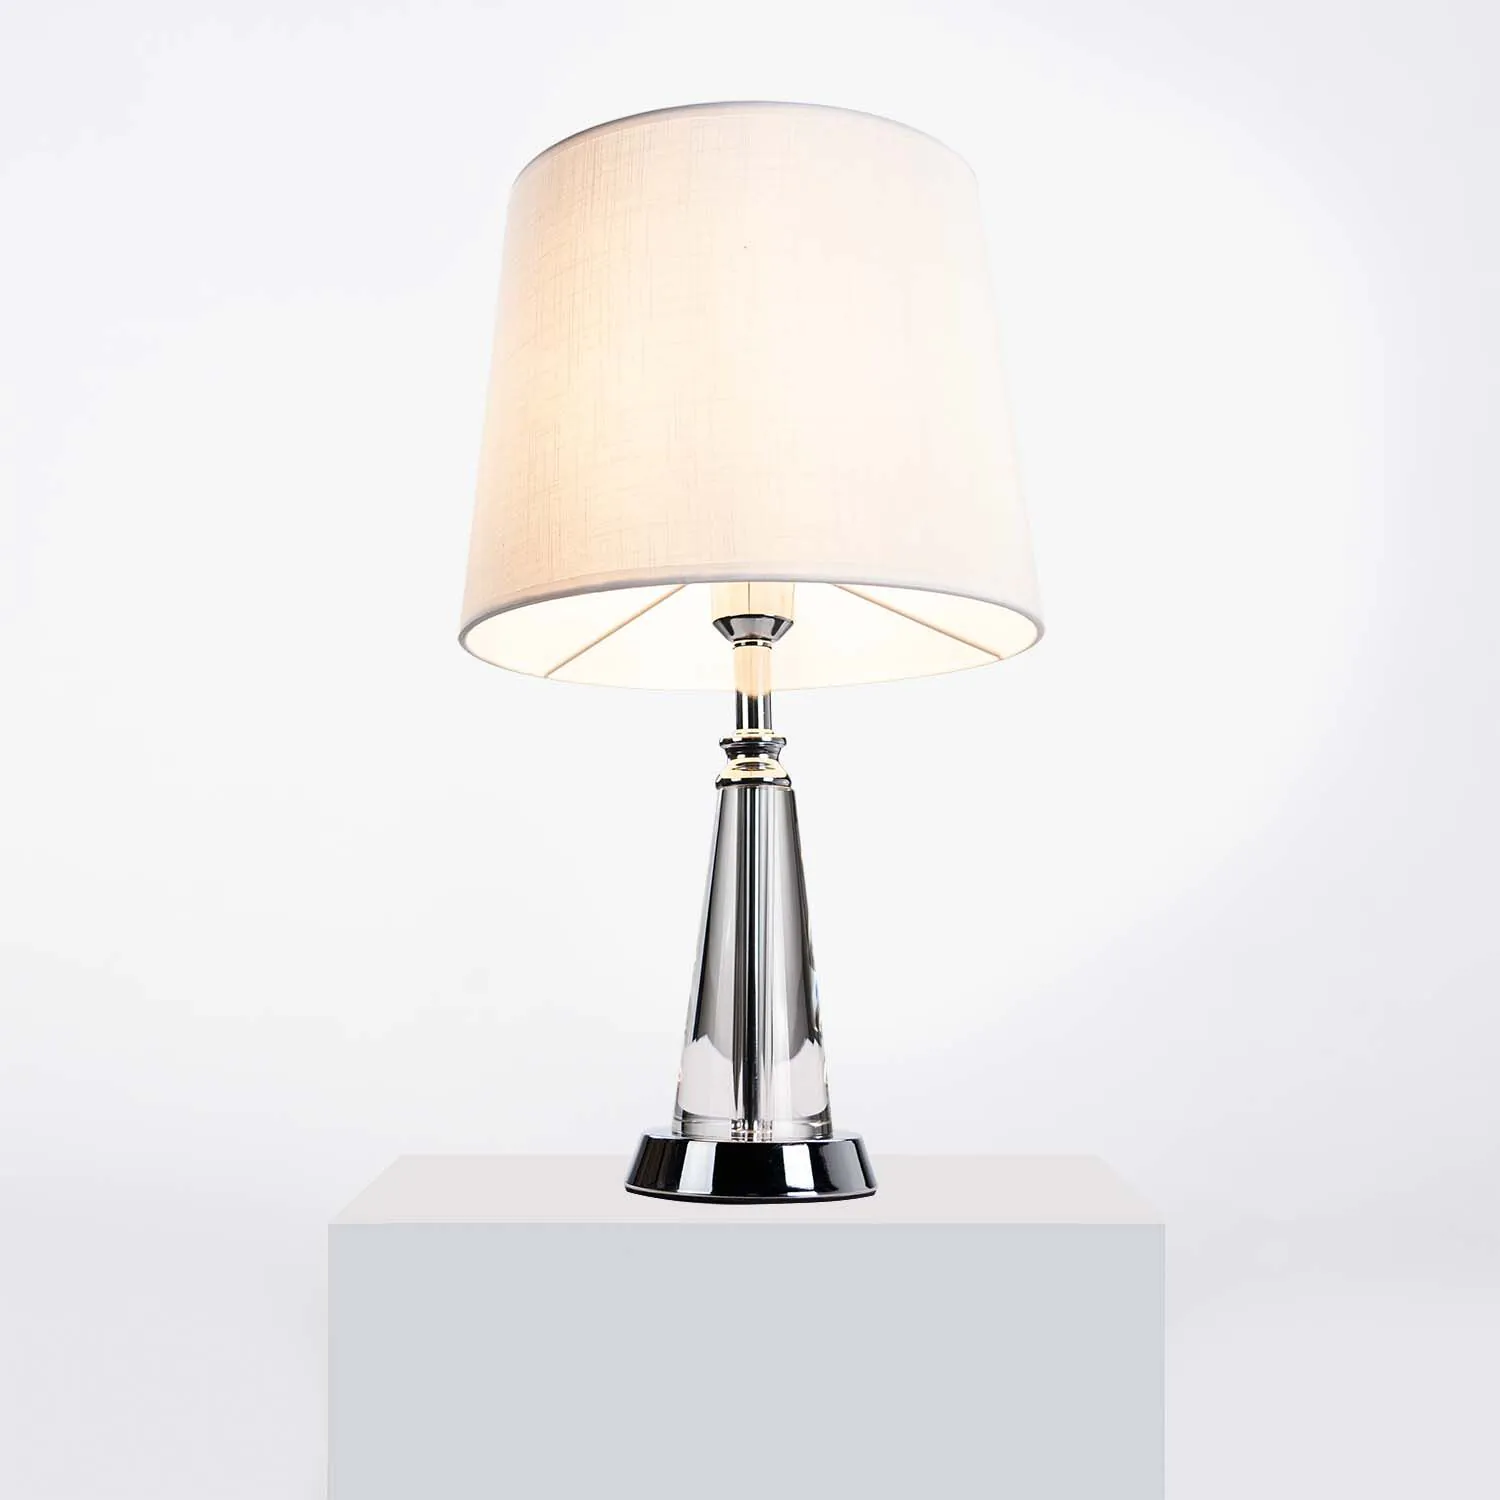 Bordslampa Glas/Krom H50cm - Pisa